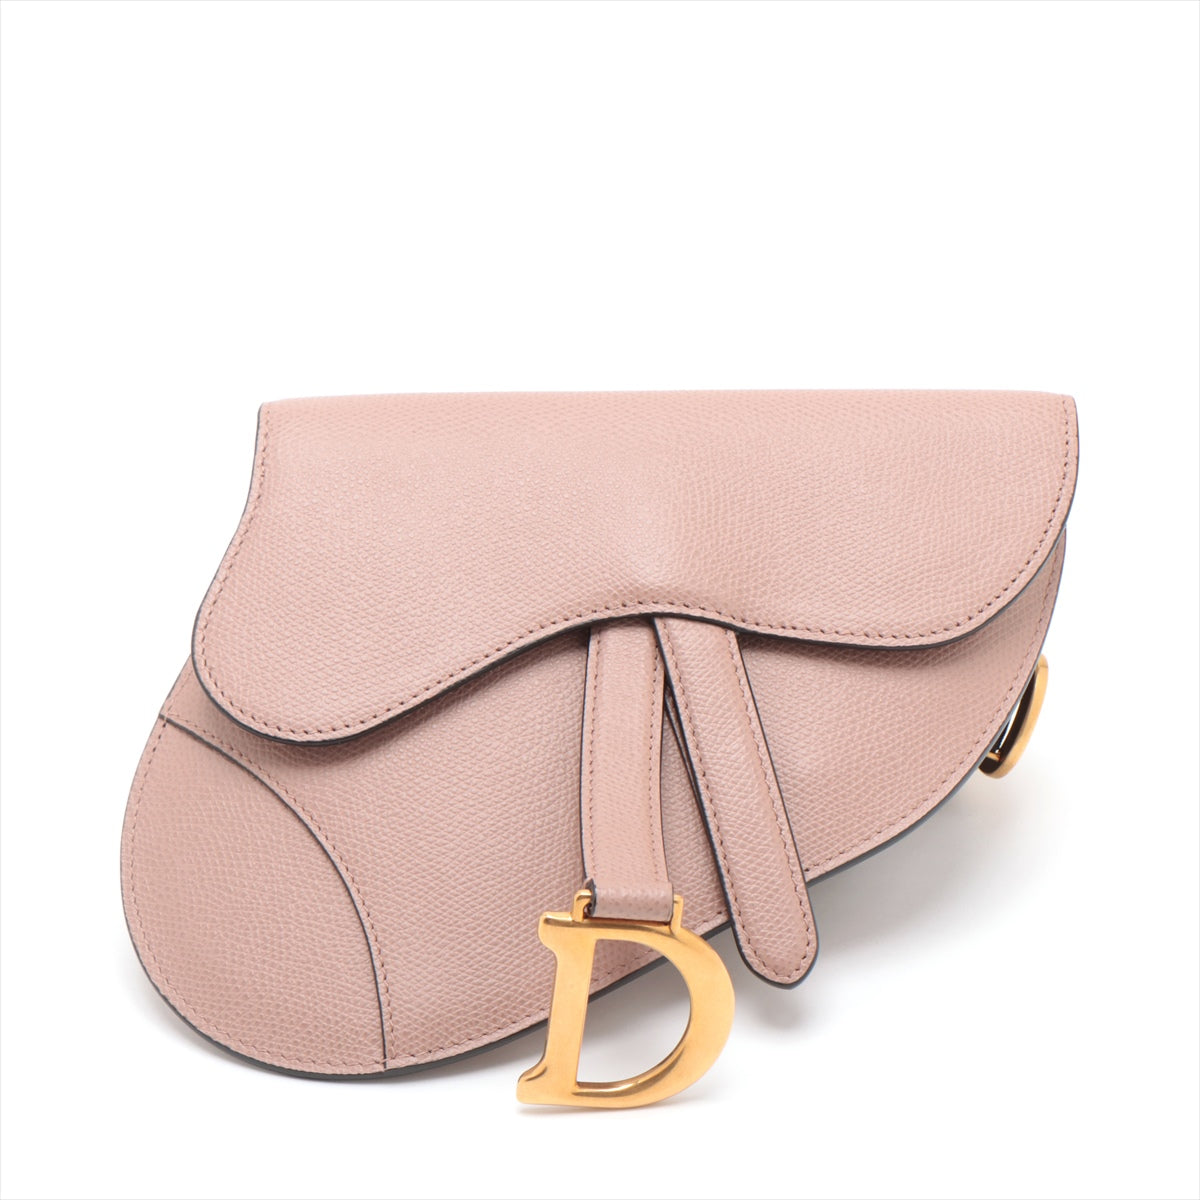 Christian Dior Saddle Leather Sling backpack Pink